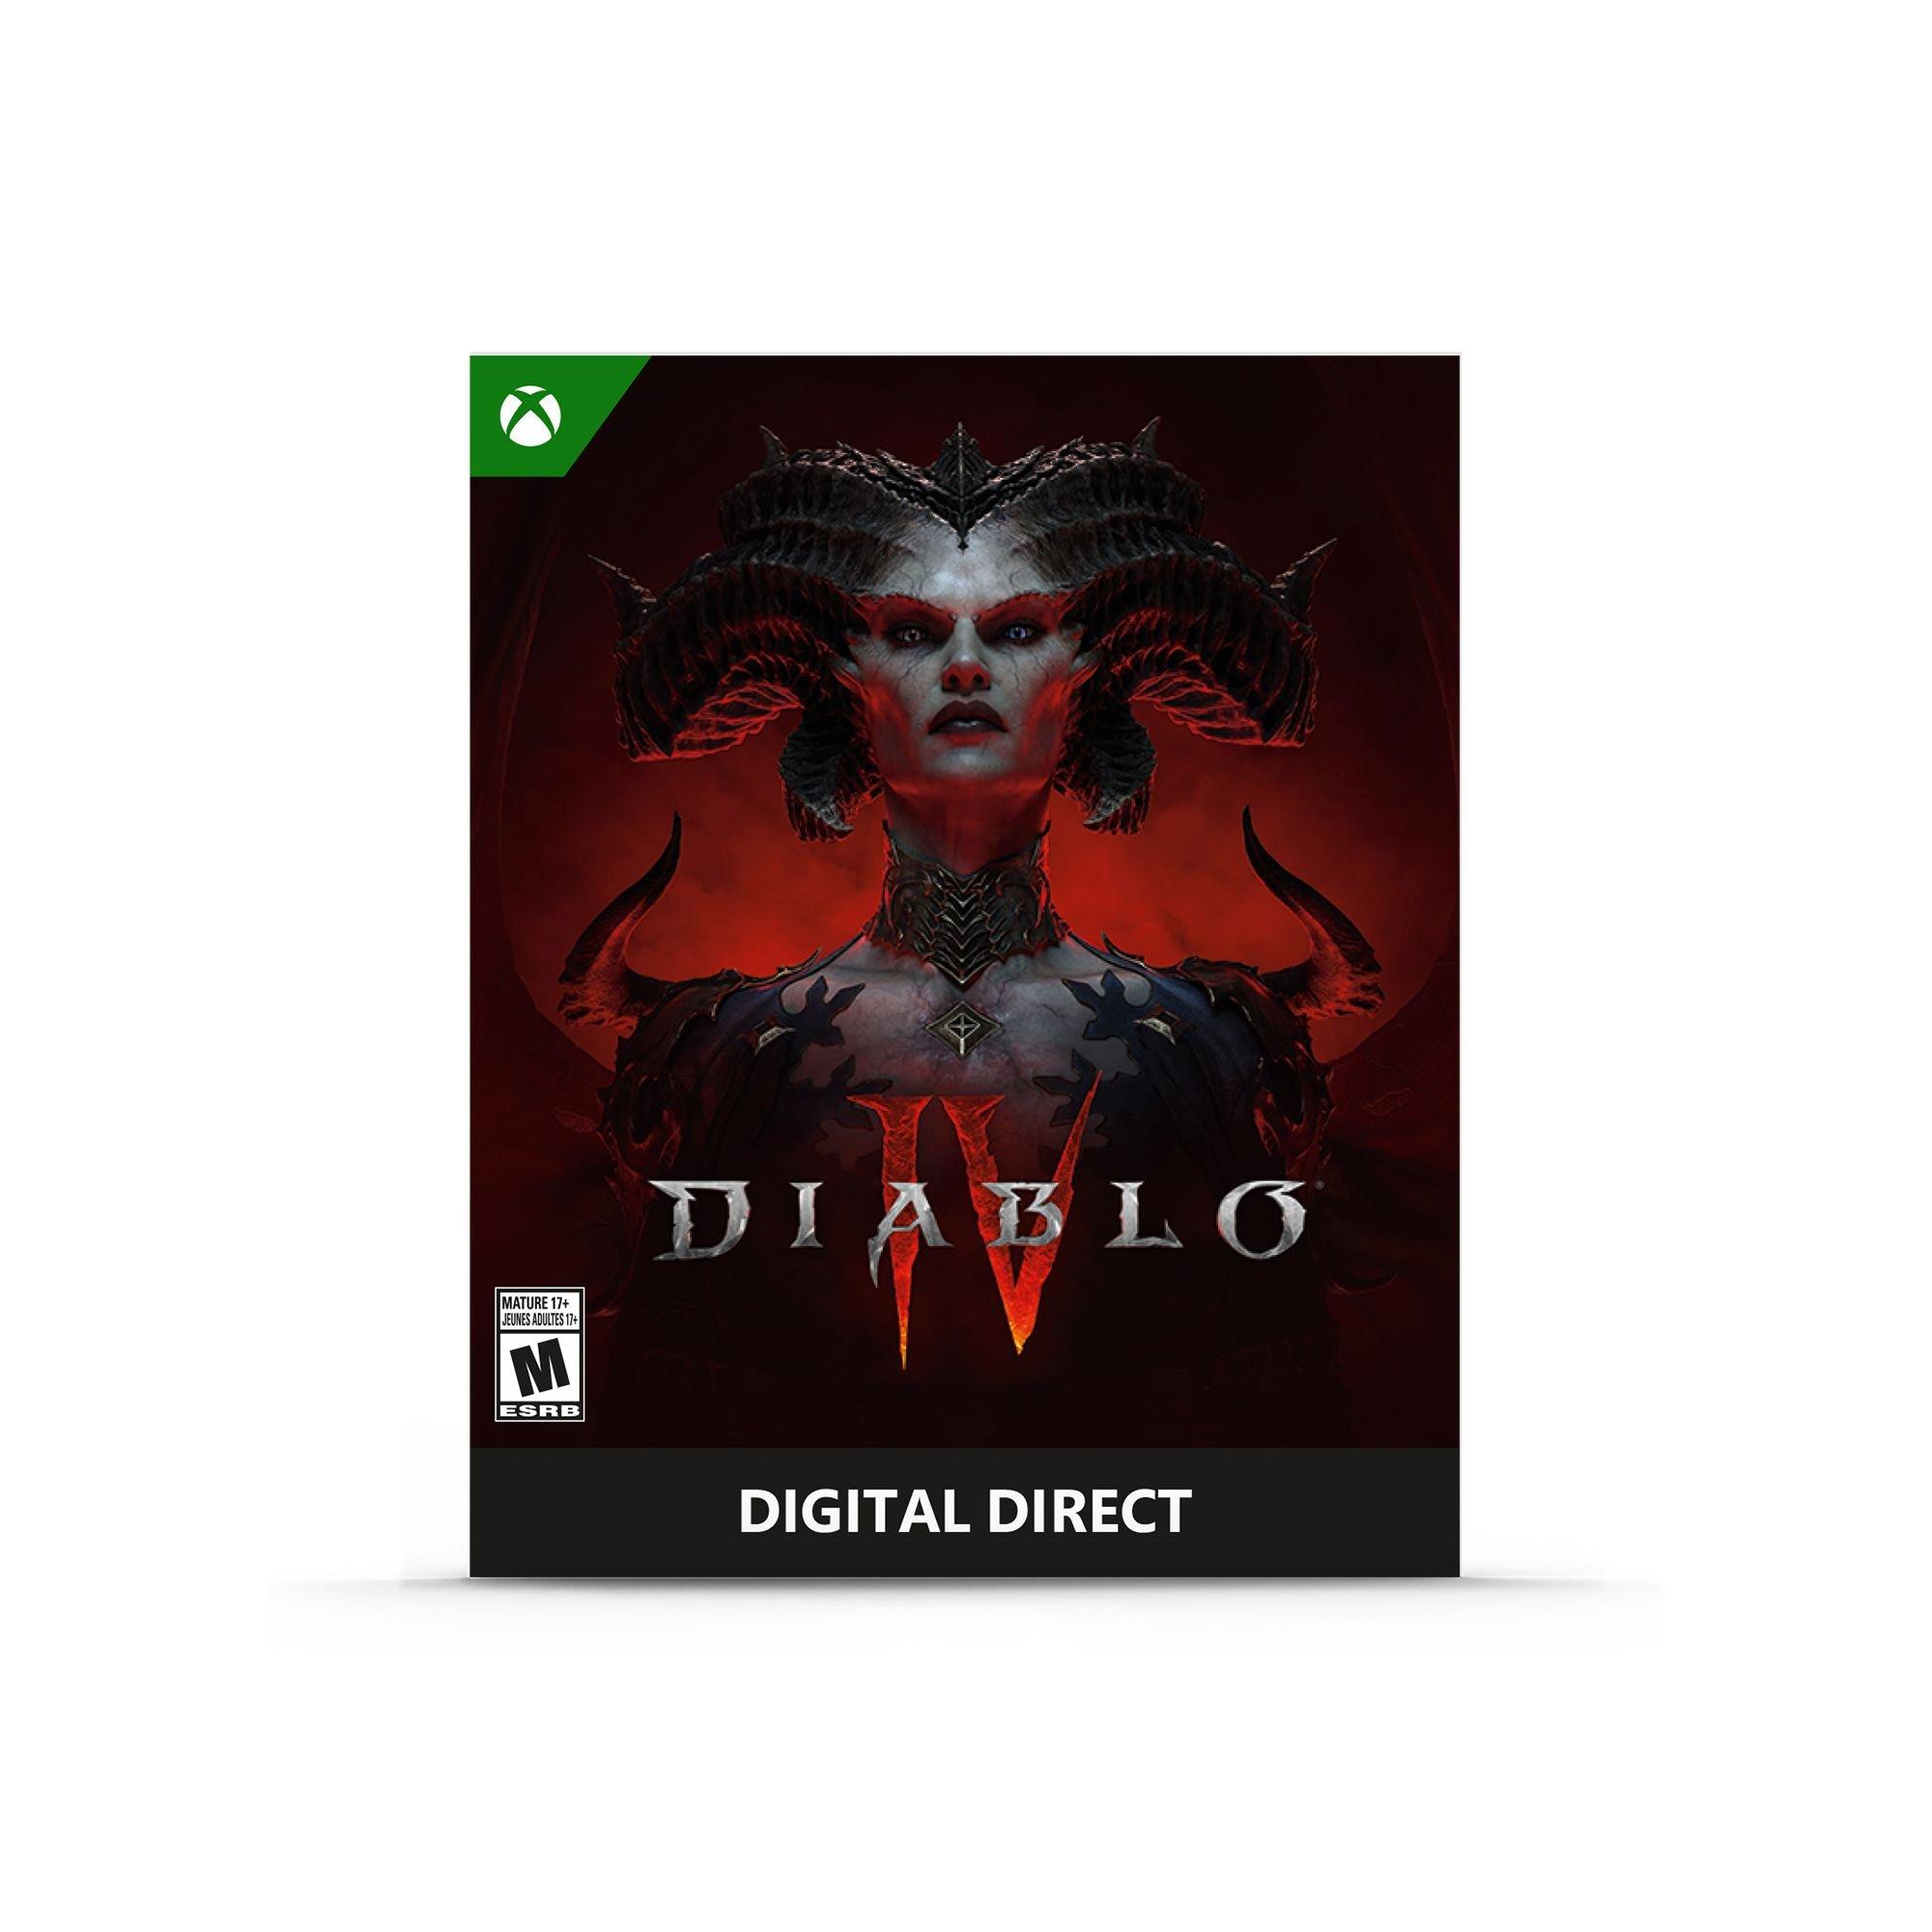 Xbox Series X Console - Diablo IV Bundle